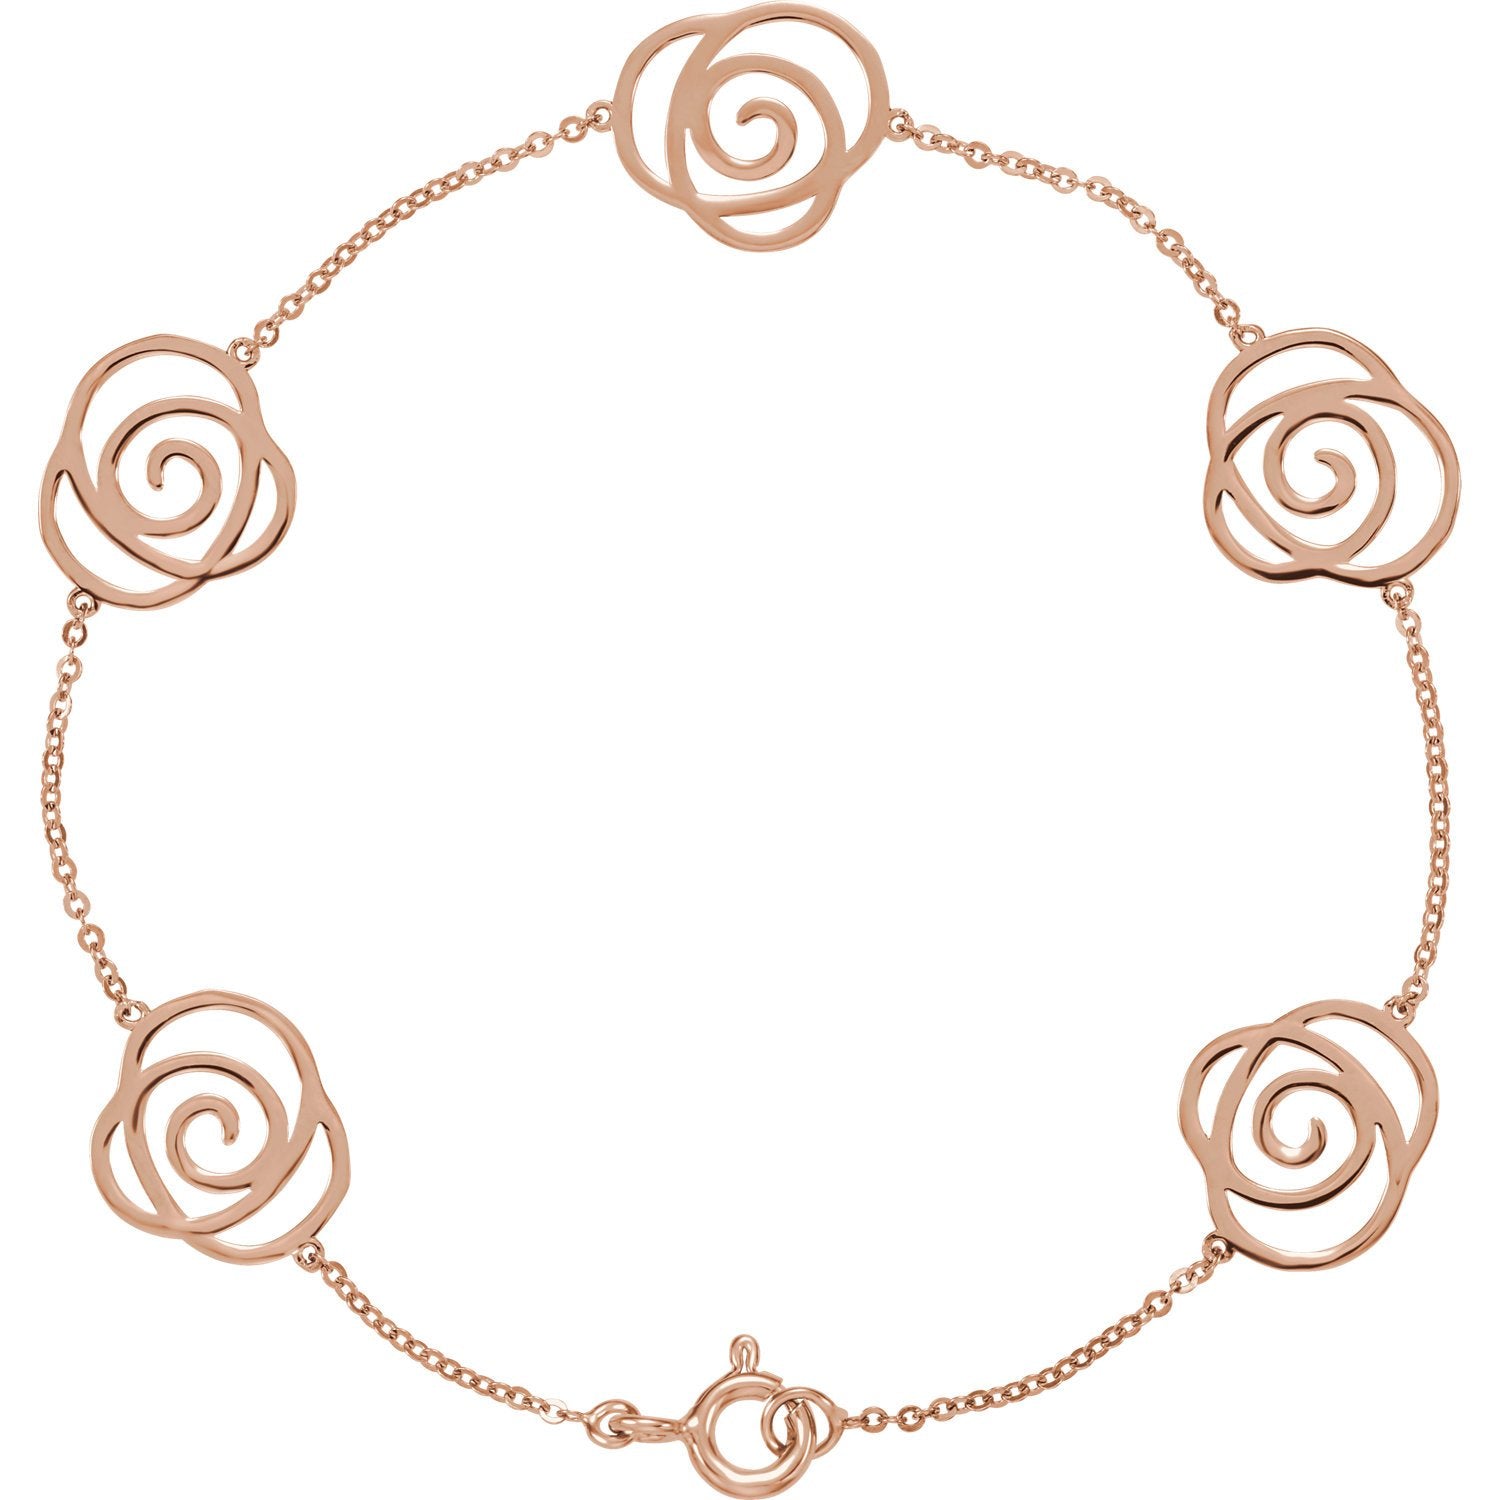 Rose Floral Chain Bracelet - 14k Rose Gold